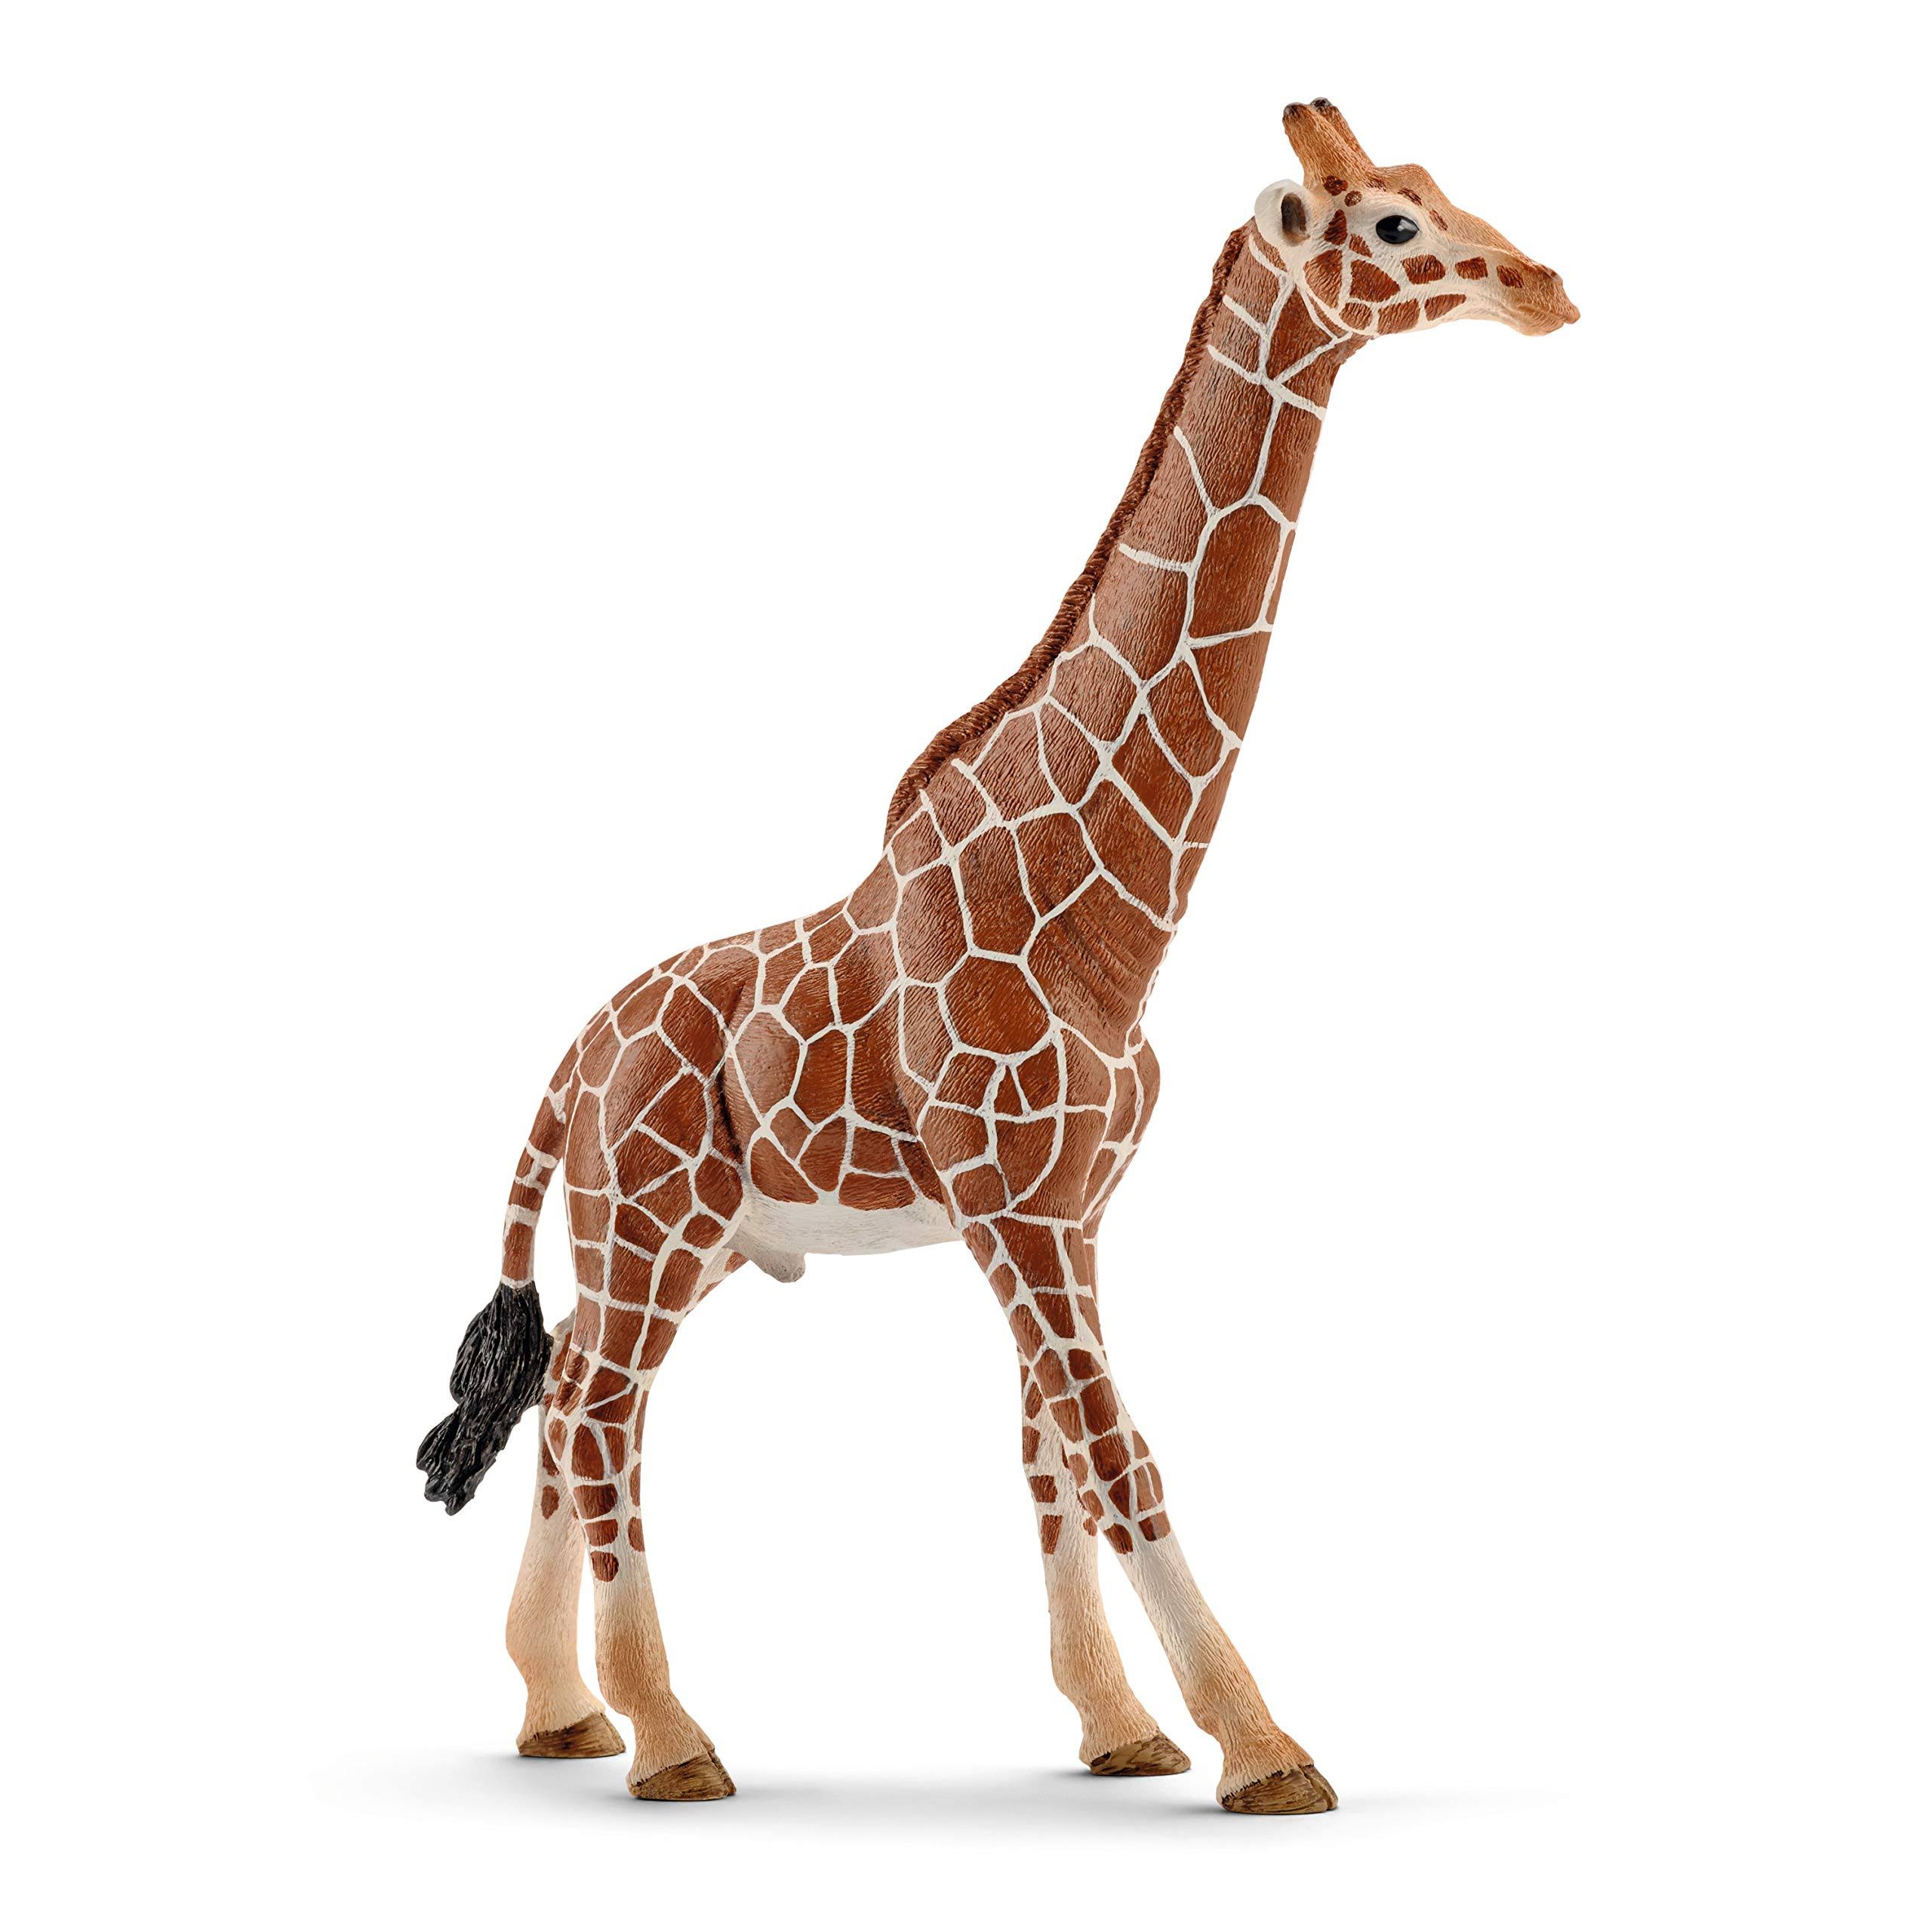 Schleich Giraffe Figure - 14749